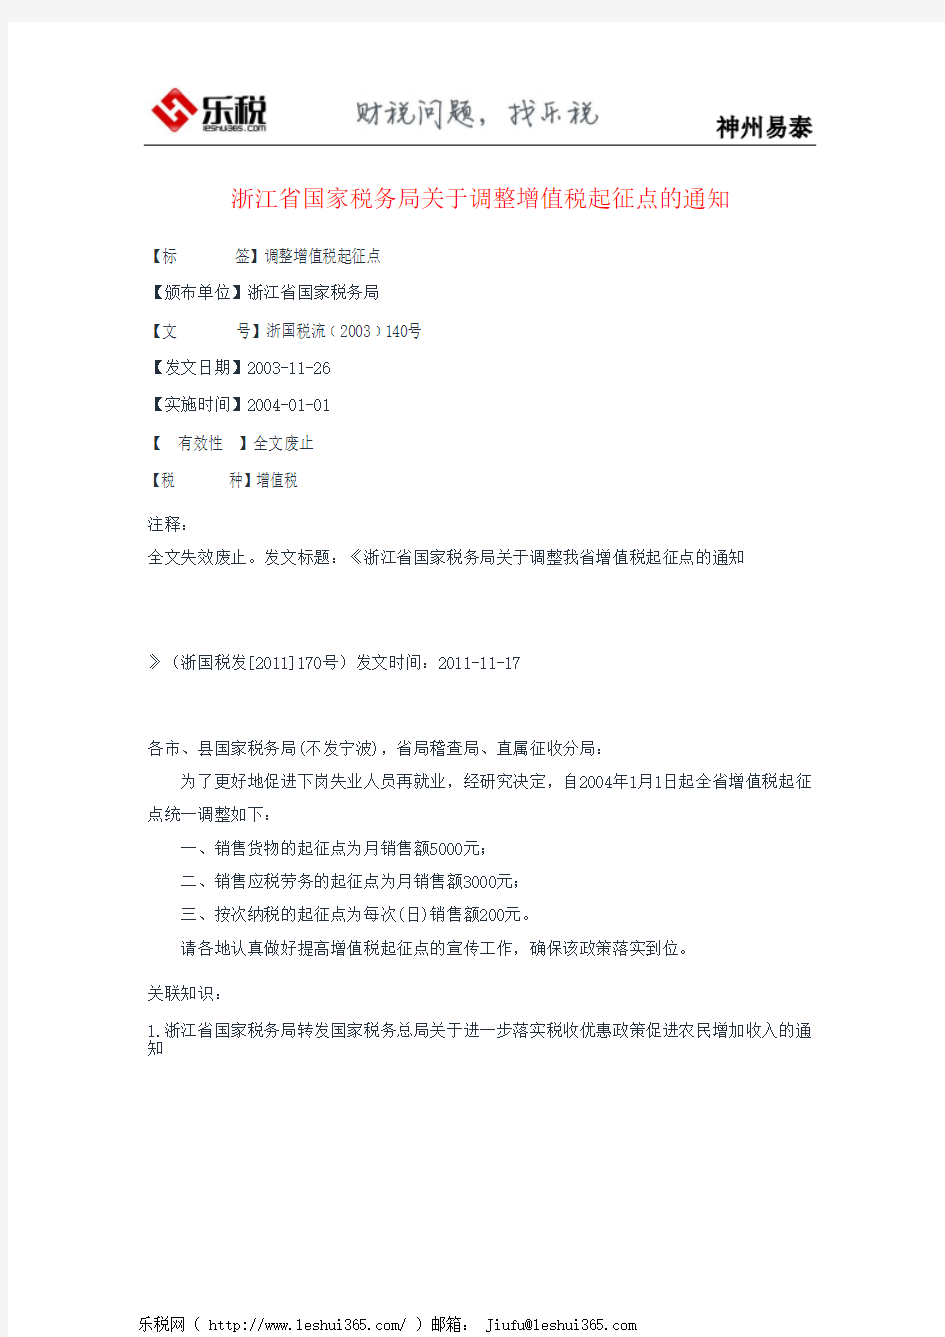 浙江省国家税务局关于调整增值税起征点的通知